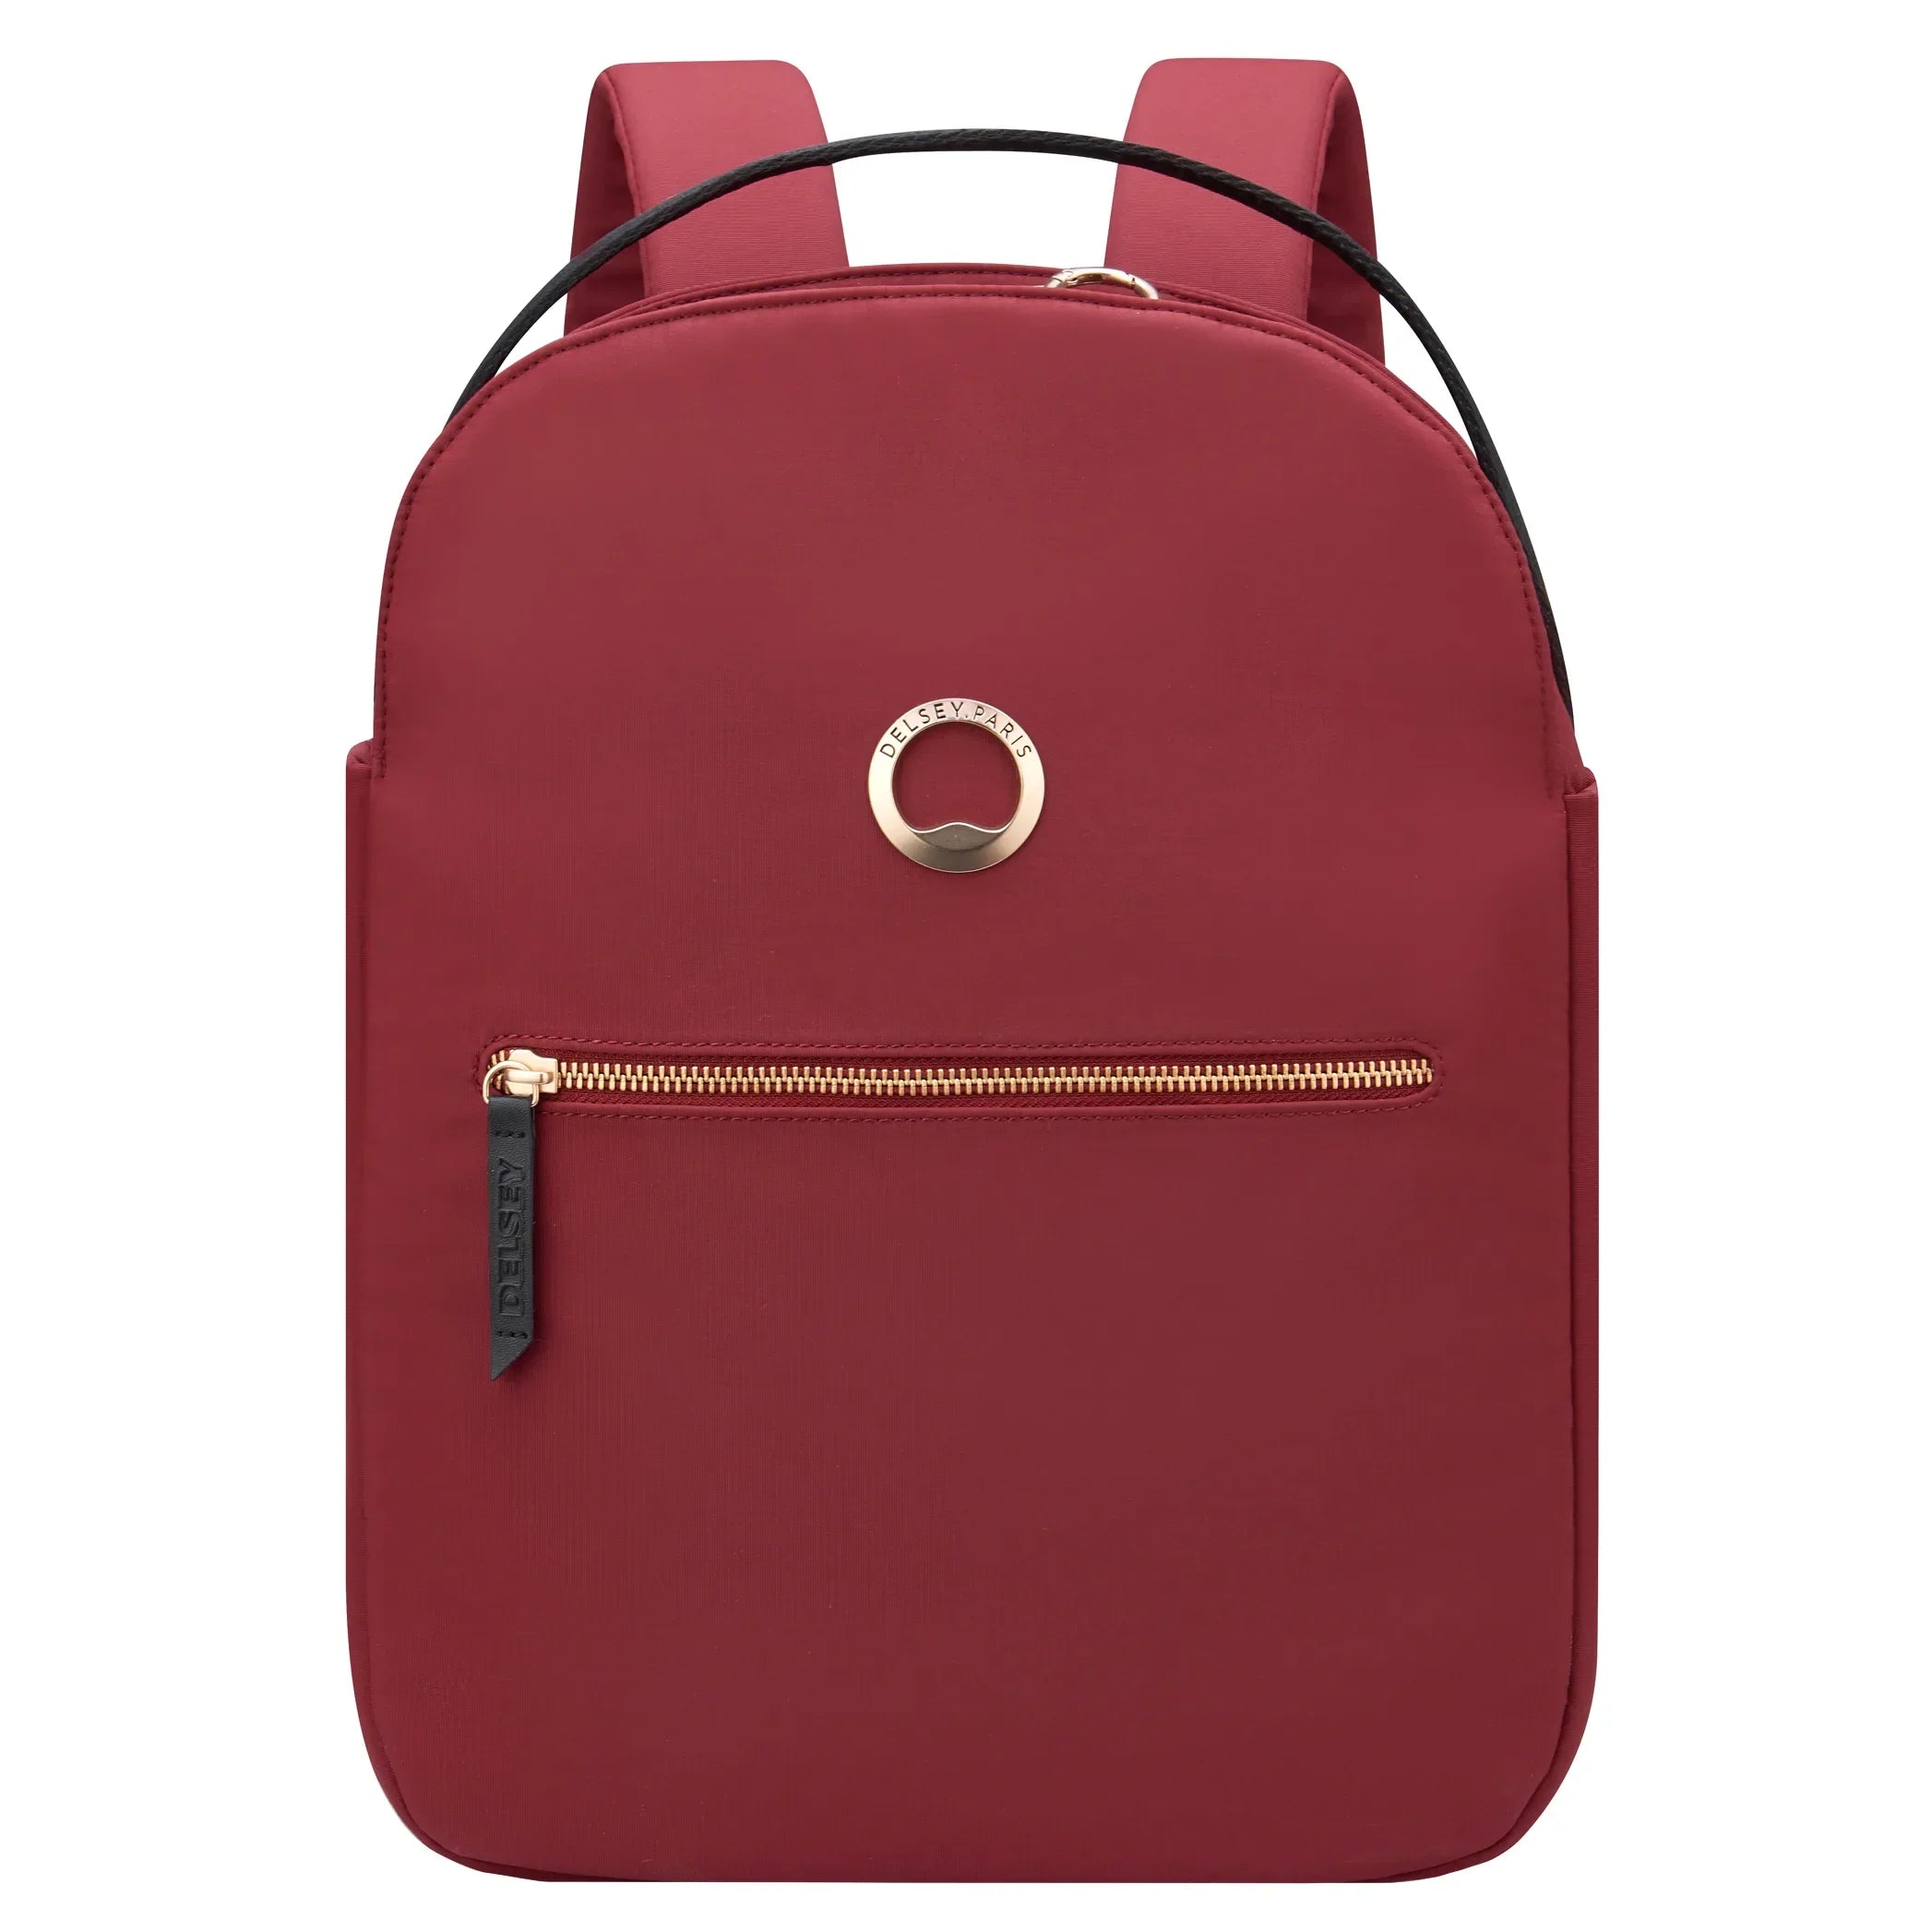 Delsey Securstyle laptop backpack 38 cm - dark brown